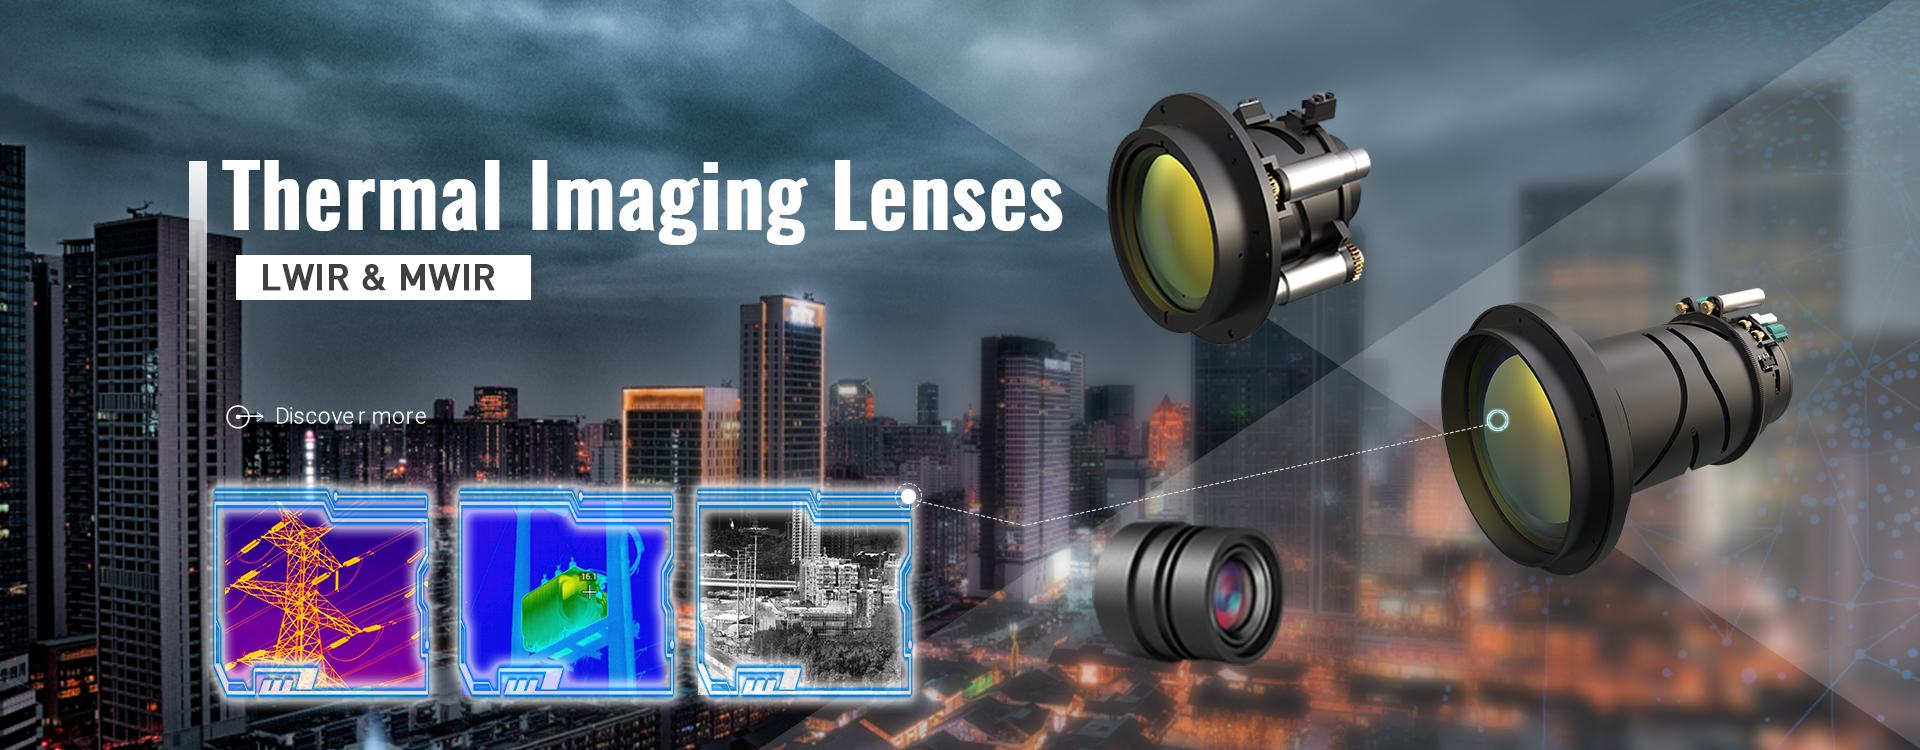 Thermal Imaging Lenses